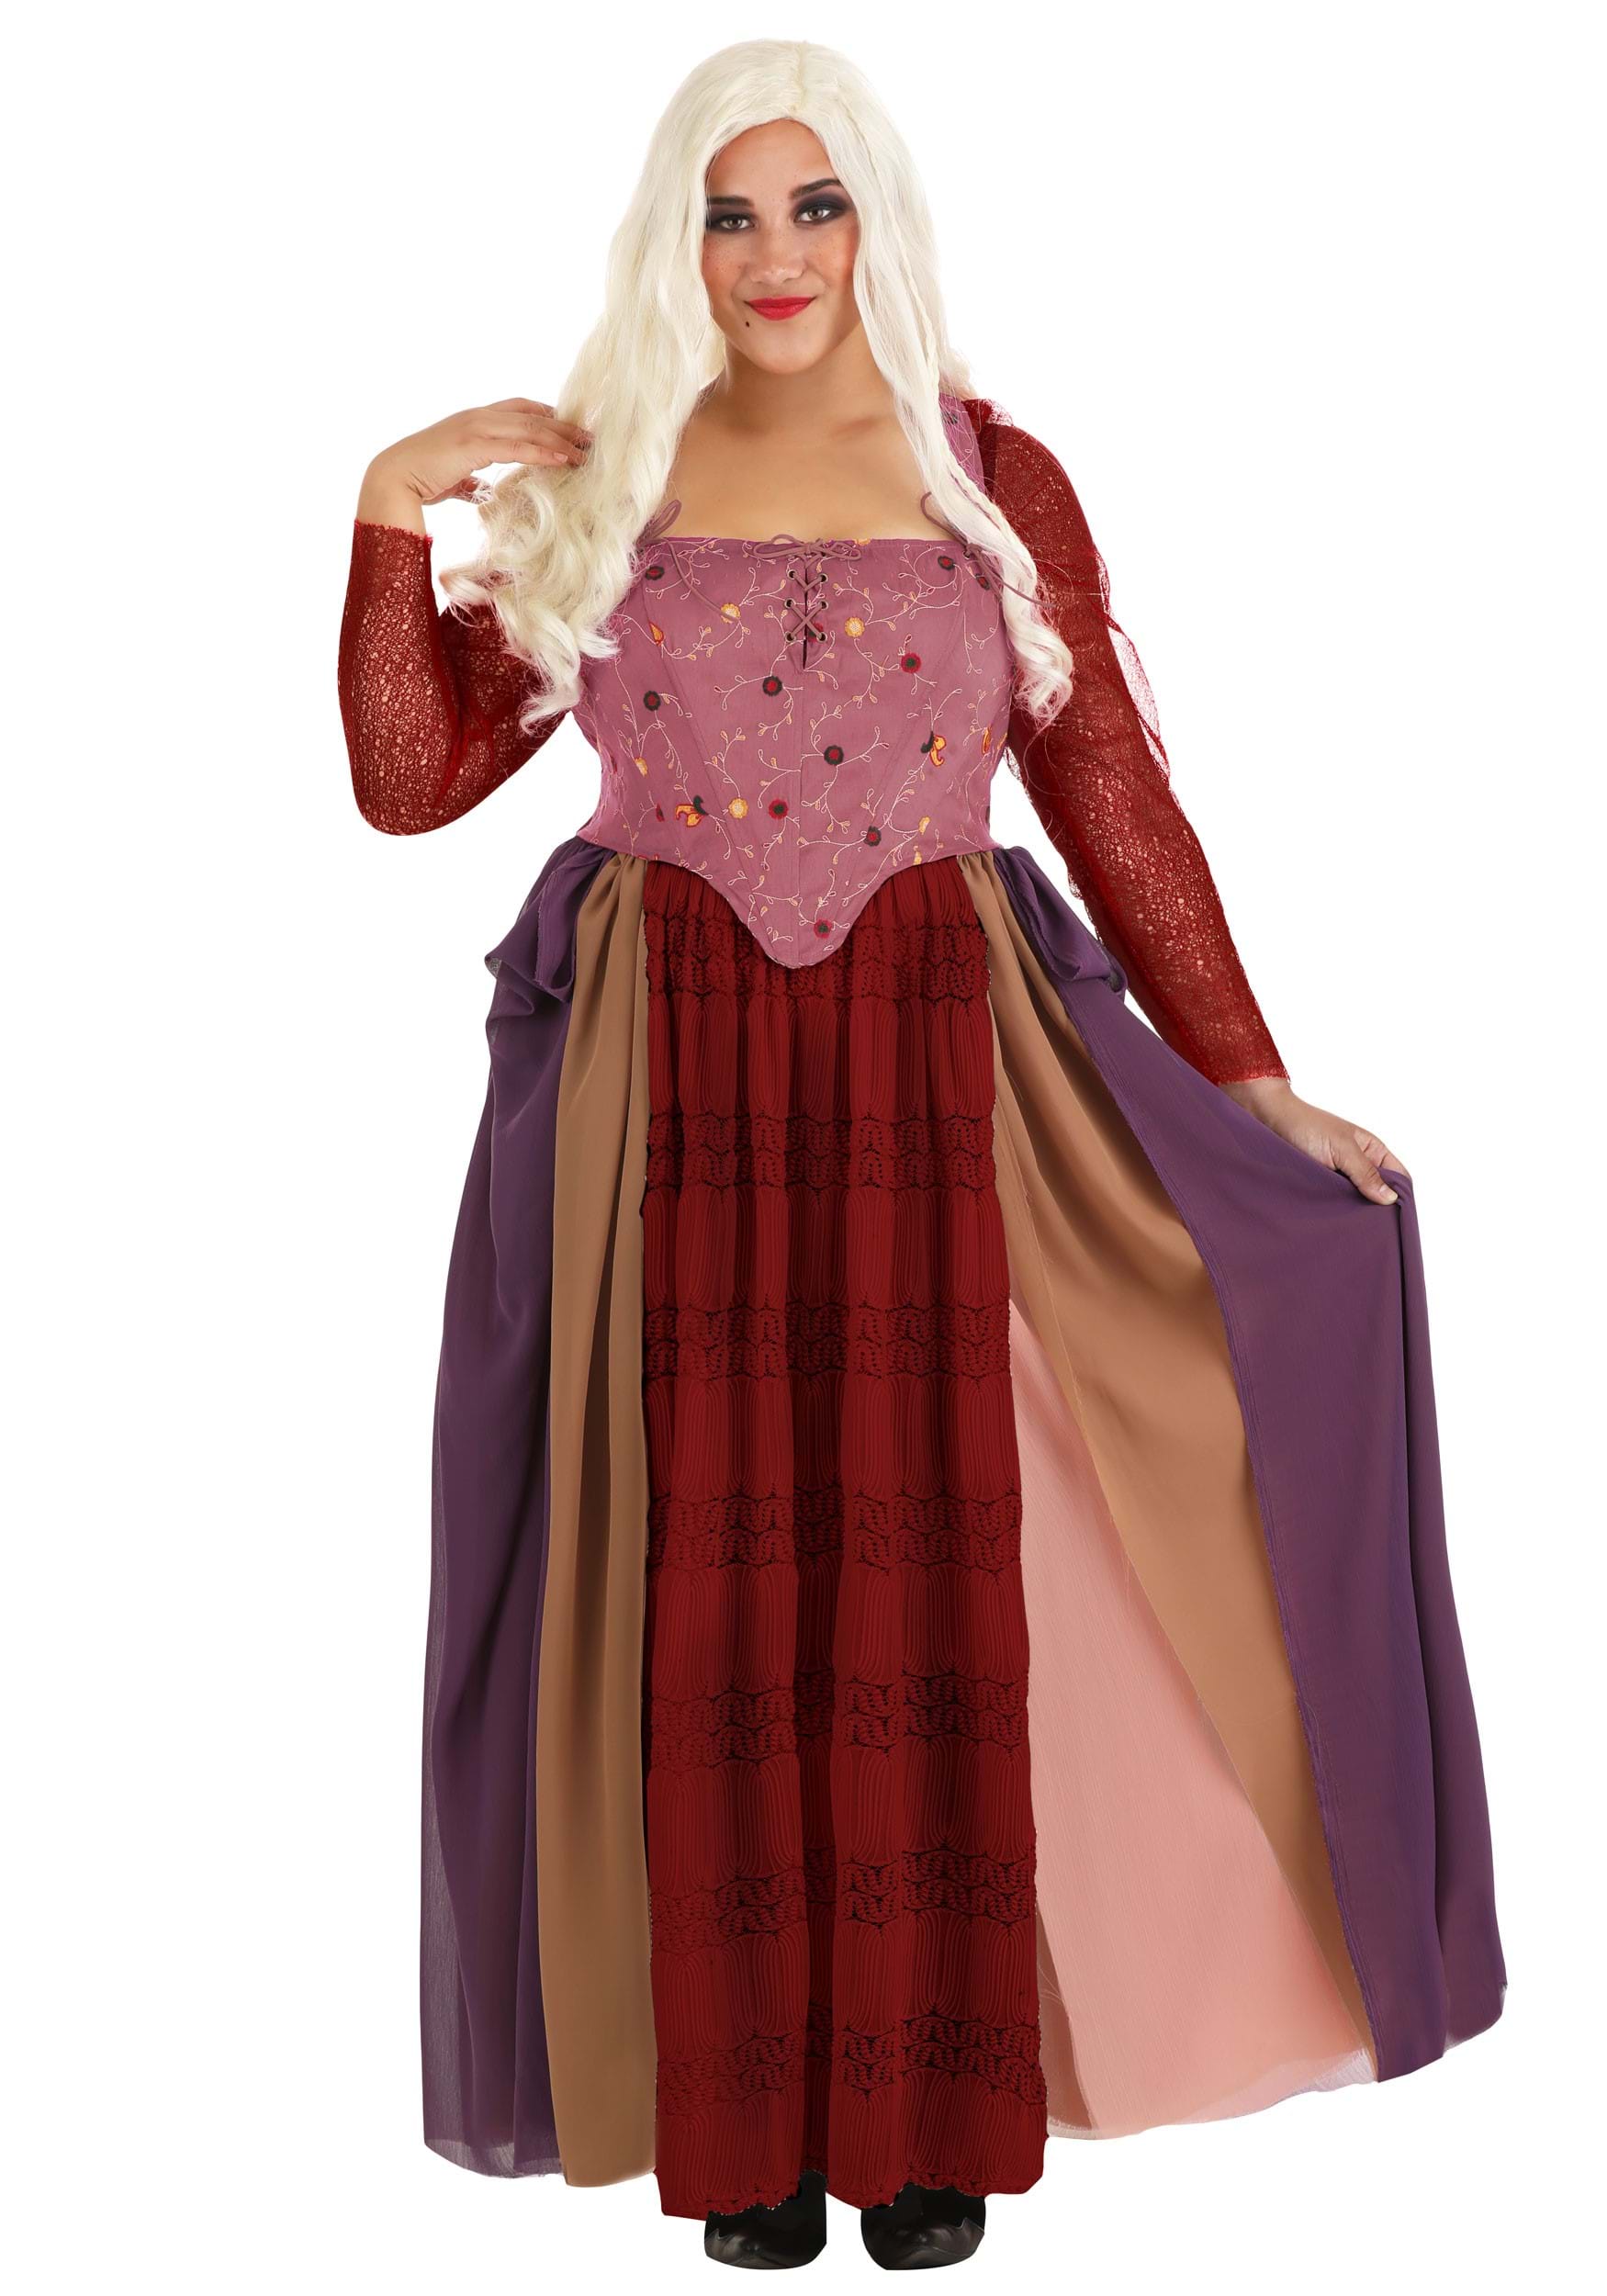 Photos - Fancy Dress Sanderson FUN Costumes Hocus Pocus Sarah  Plus Size Women's Costume Pink 